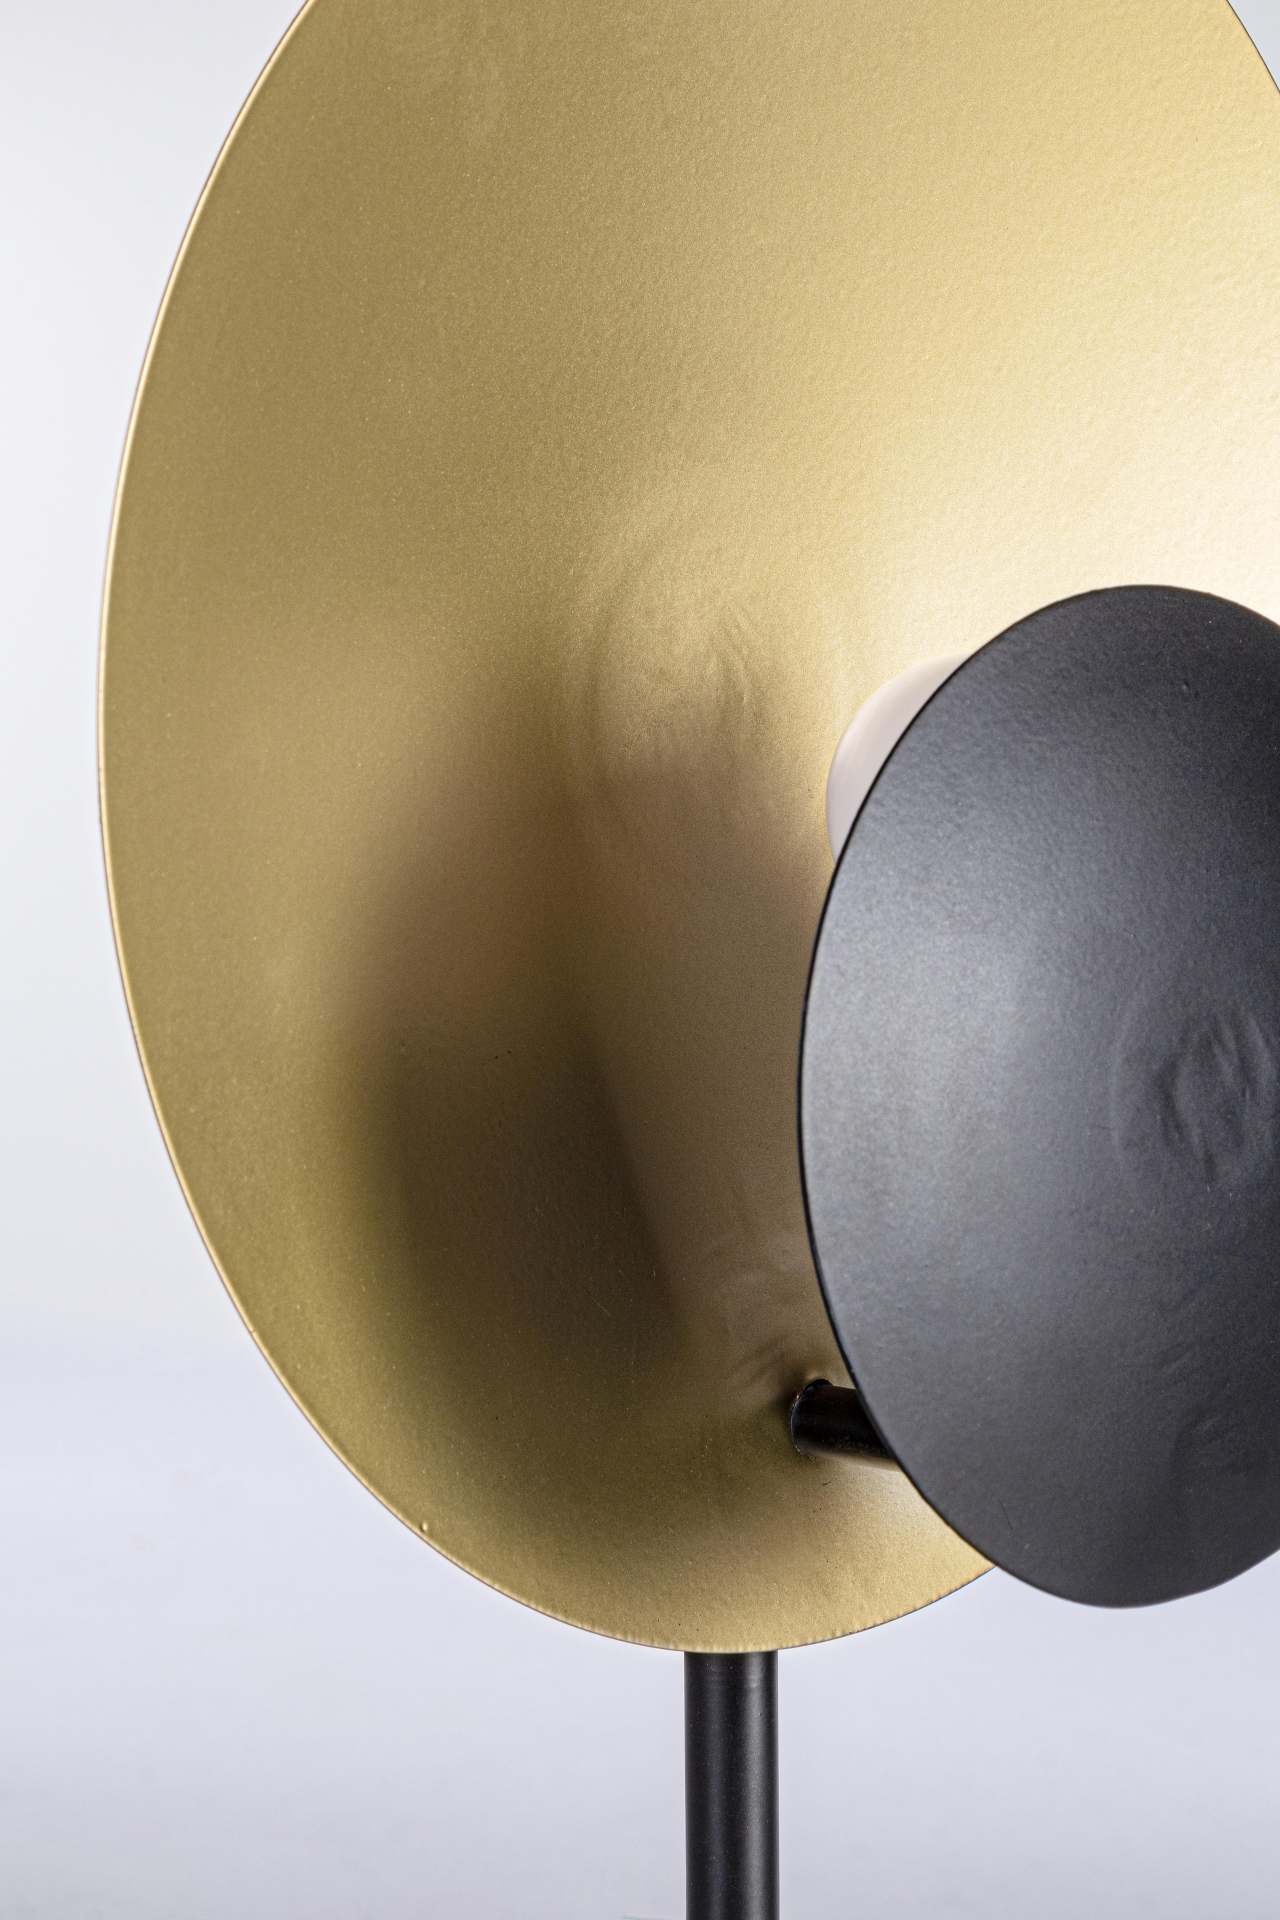 Die Tischleuchte Design überzeugt mit ihrem modernen Design. Gefertigt wurde sie aus Metall, welches einen schwarzen Farbton besitzt. Der Lampenschirm ist auch aus Metall und hat eine goldene Farbe. Die Lampe besitzt eine Höhe von 46 cm.